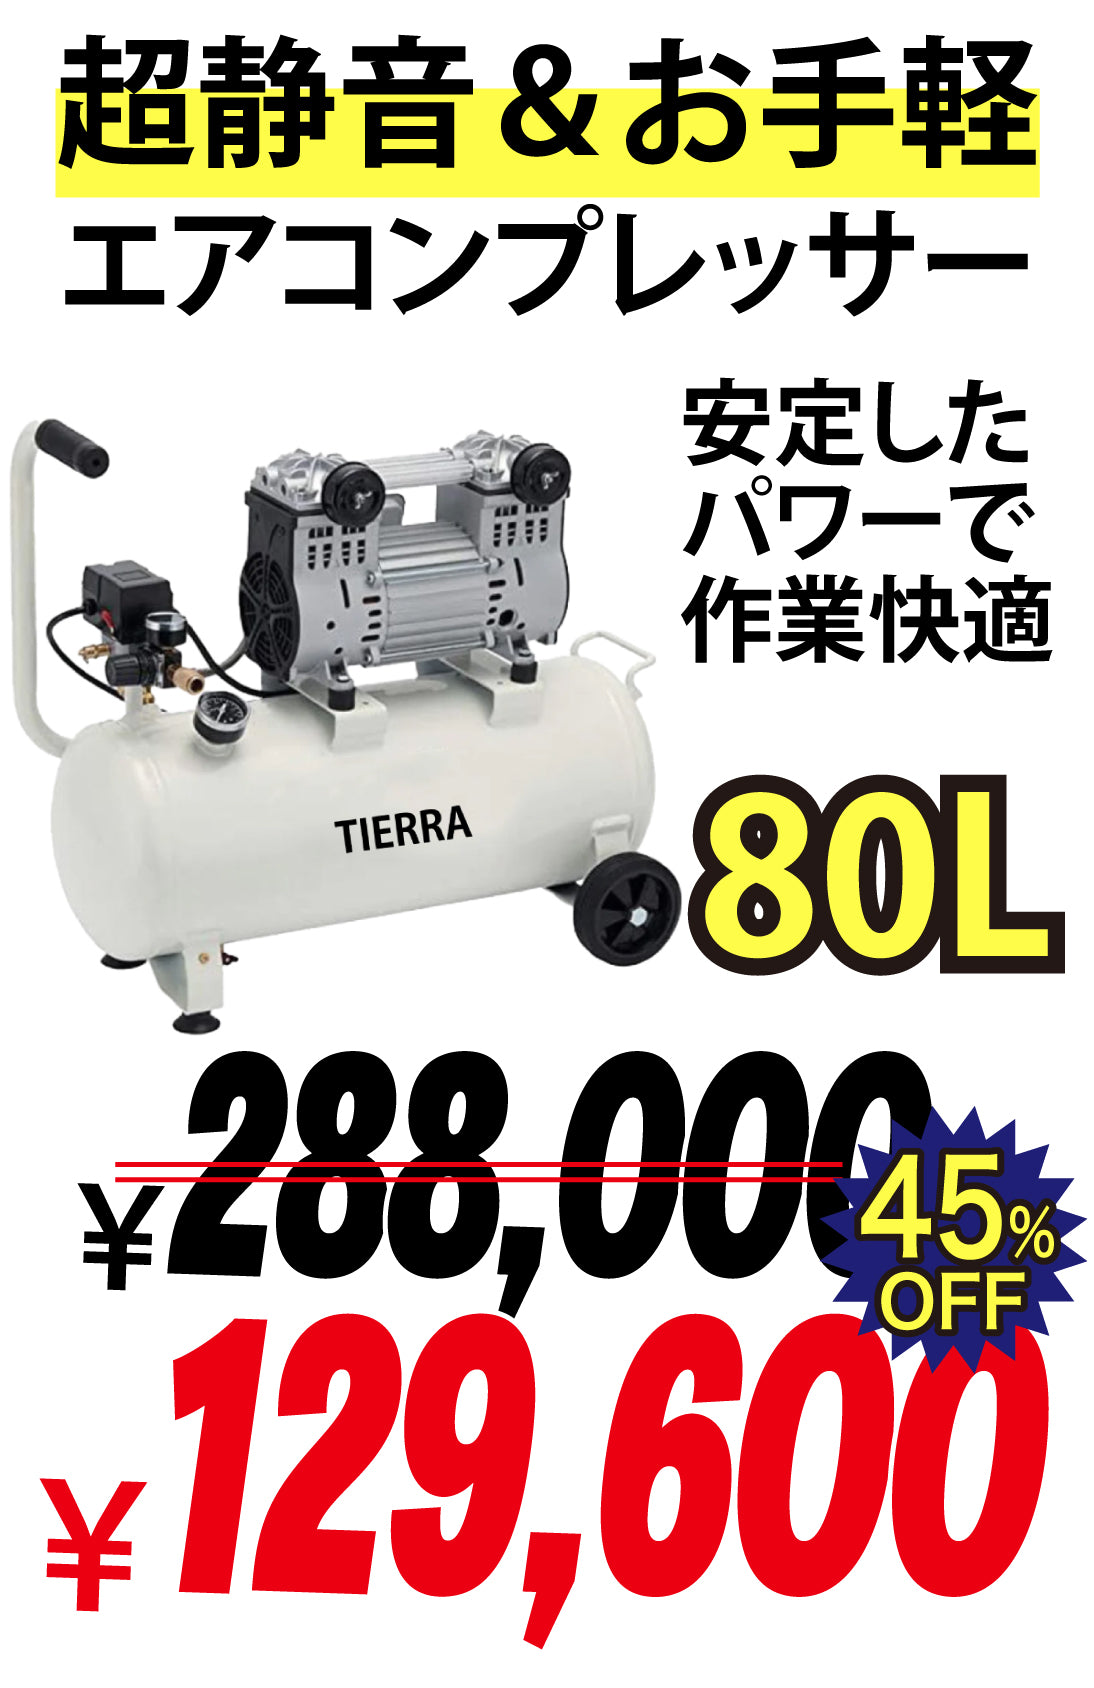 【売り尽くしセール中】TIERRA エアーコンプレッサー80L【即日発送】